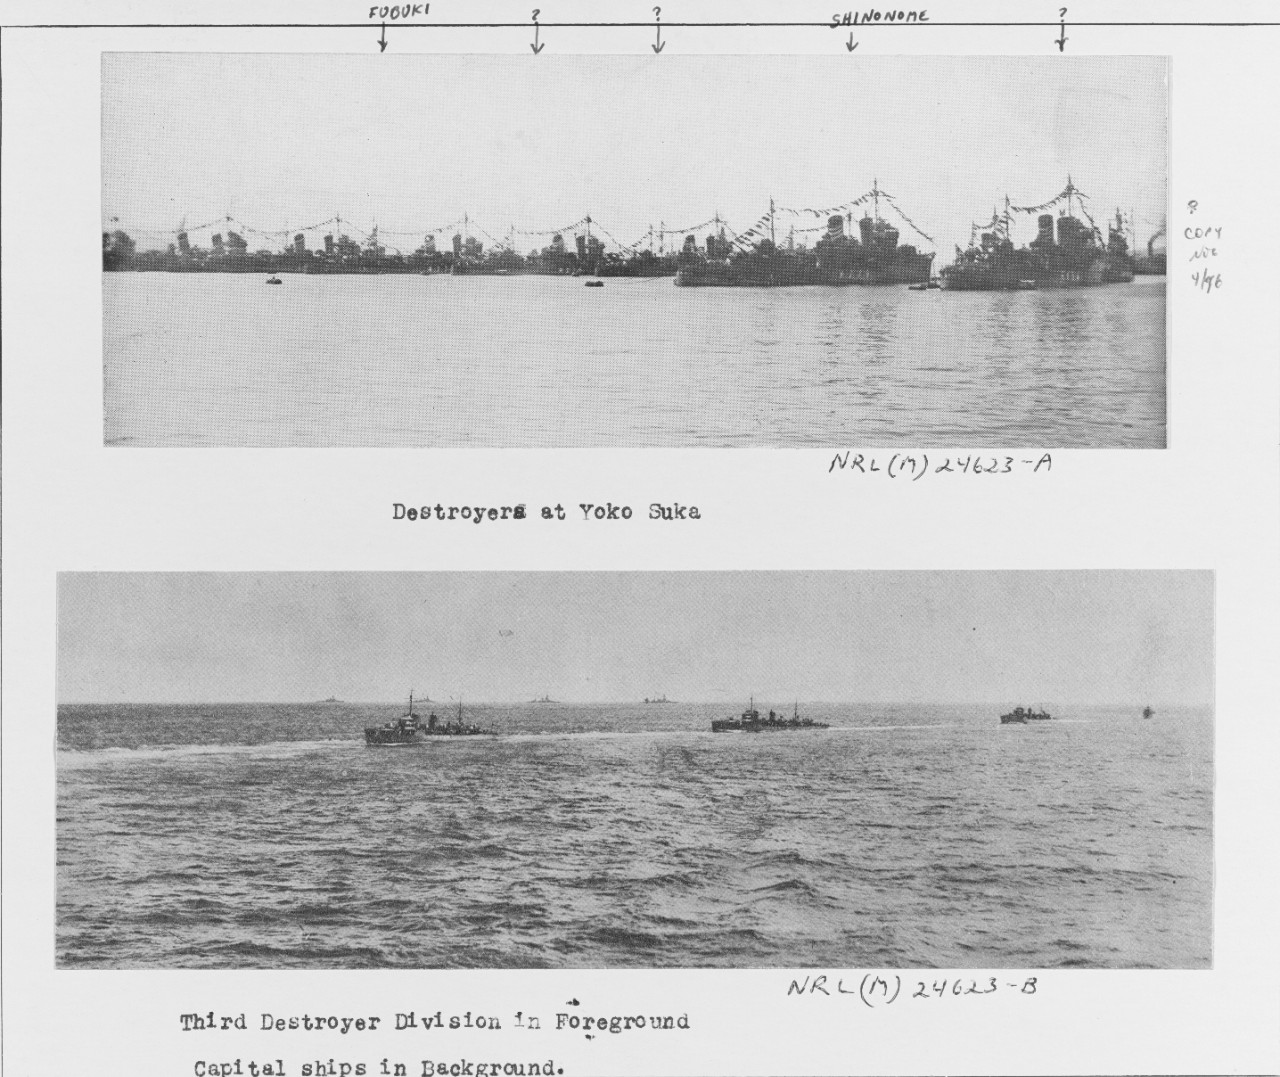 Japanese Destroyers at Yoko Suka including FUBUKI and SHINONOME